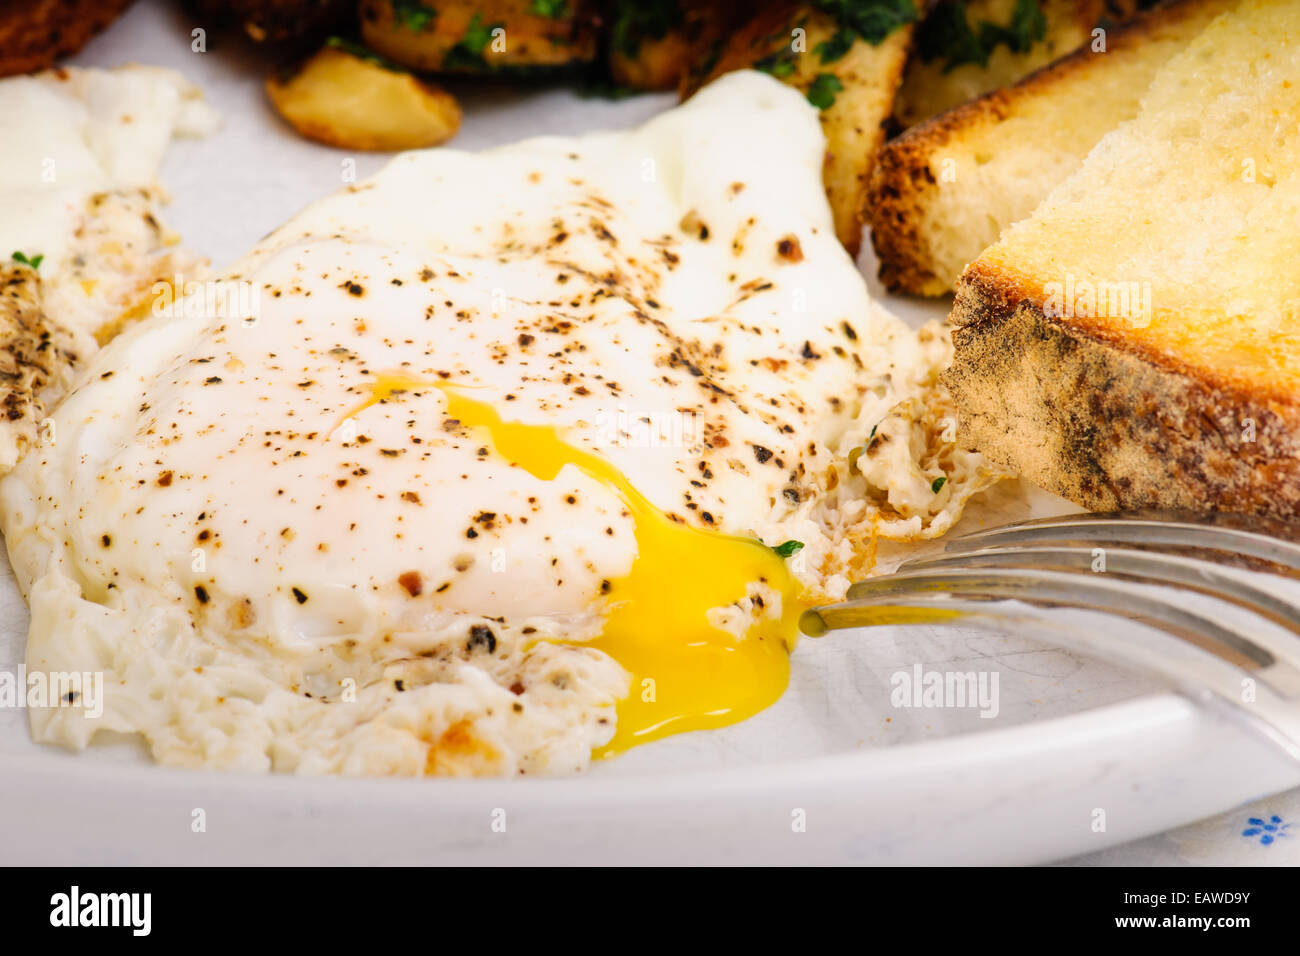 Desayuno indulgente de tocino, papa papa rallada, Sunny Side huevos, tostadas y sourdough. Foto de stock